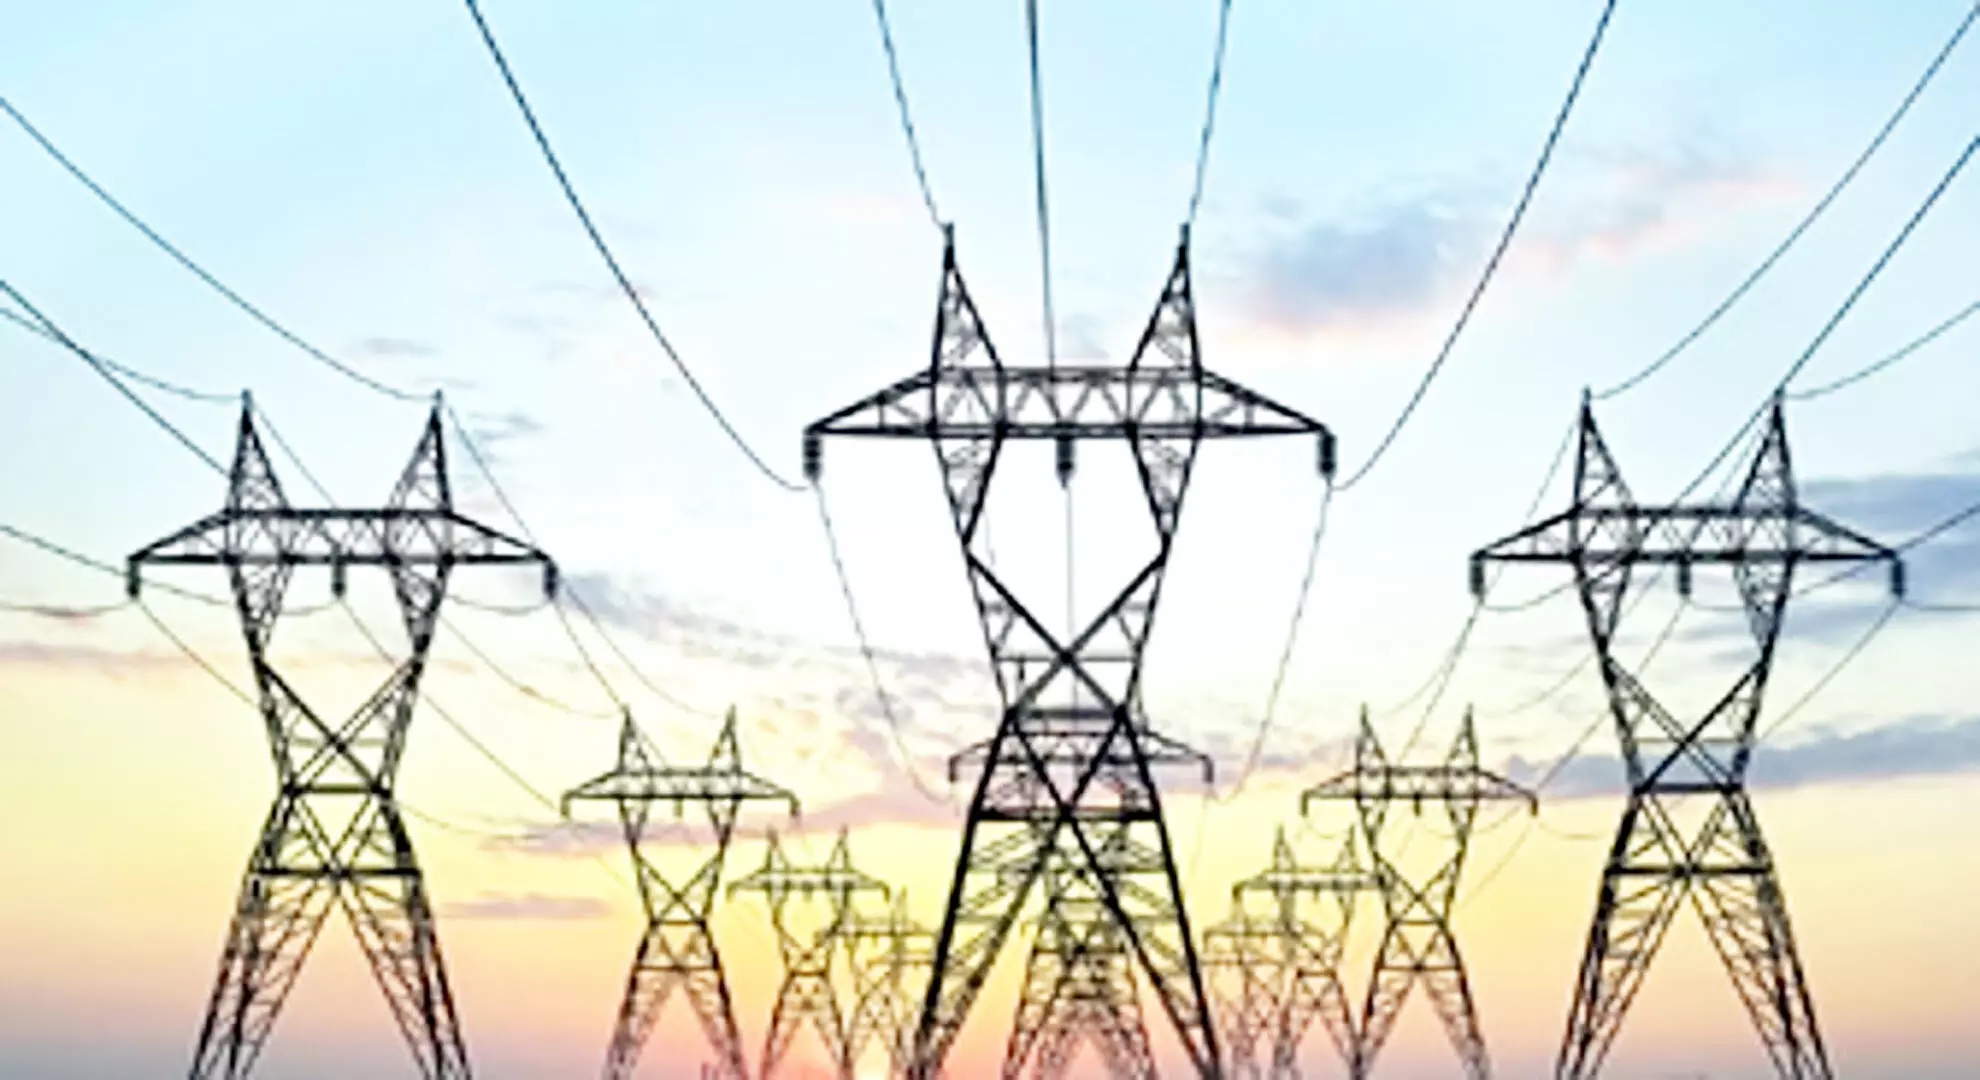 तेलंगाना सरकार उपभोक्ताओं को राहत देने के लिए एनटीपीसी के साथ बिजली समझौते पर हस्ताक्षर नहीं करेगी